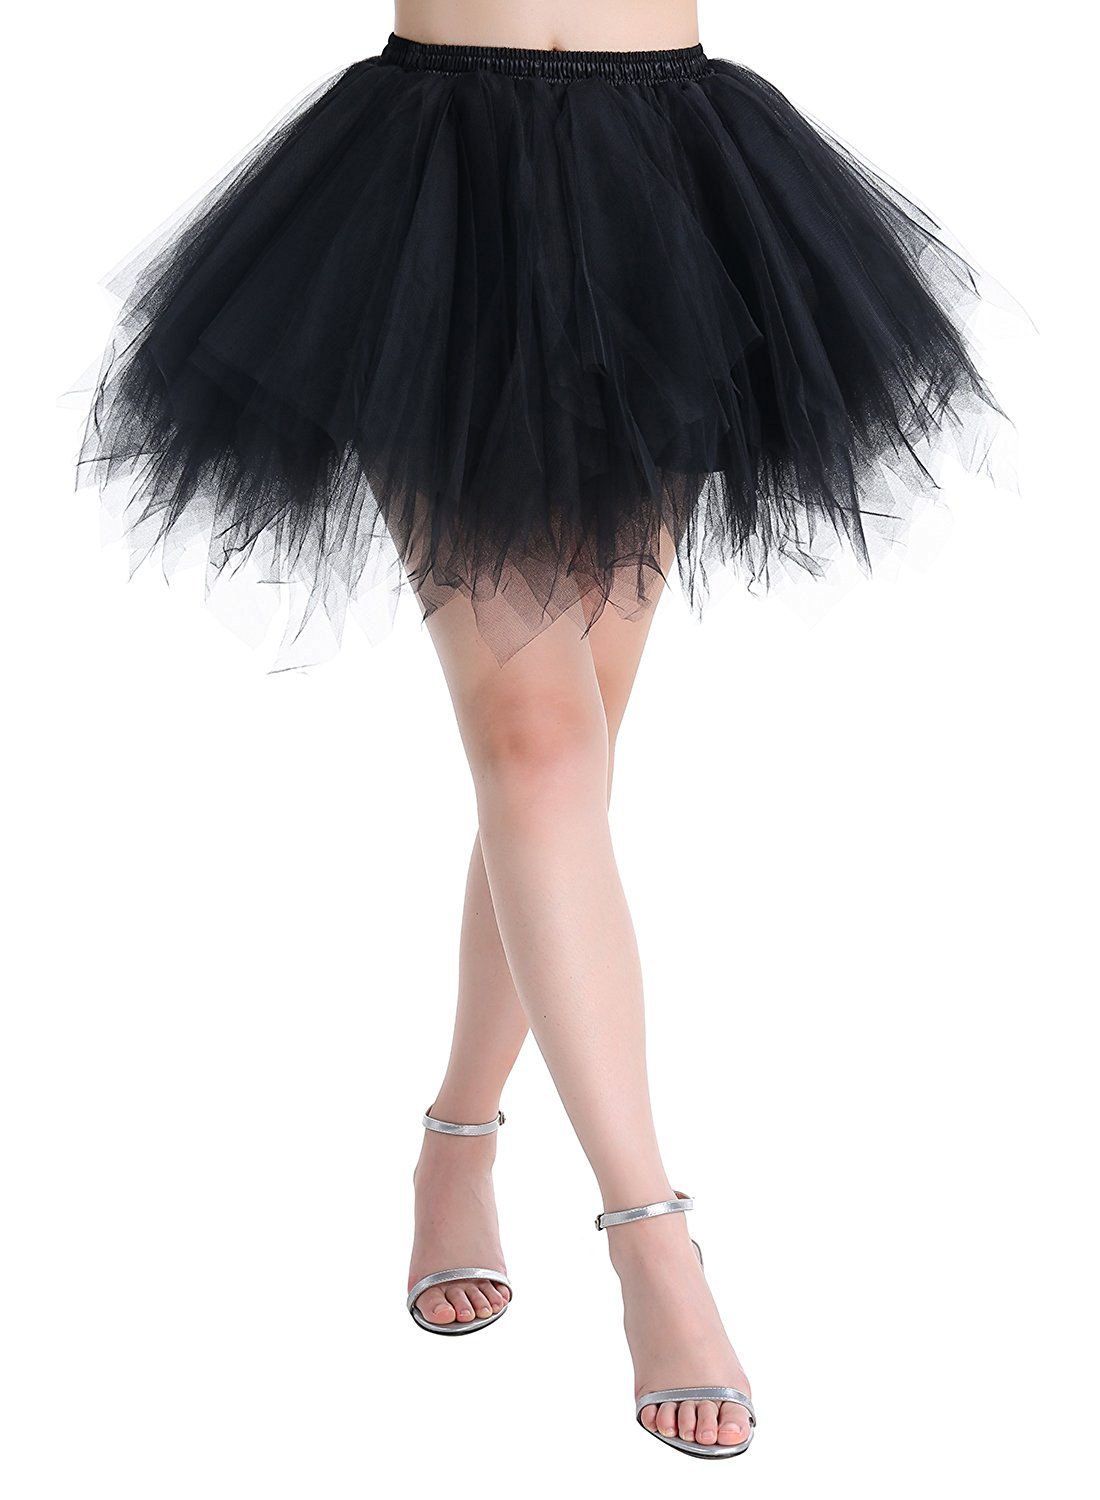 Karneval Erwachsene Damen 80's übergröße Tüllrock Tütü Röcke Tüll Petticoat Tutu Schwarz